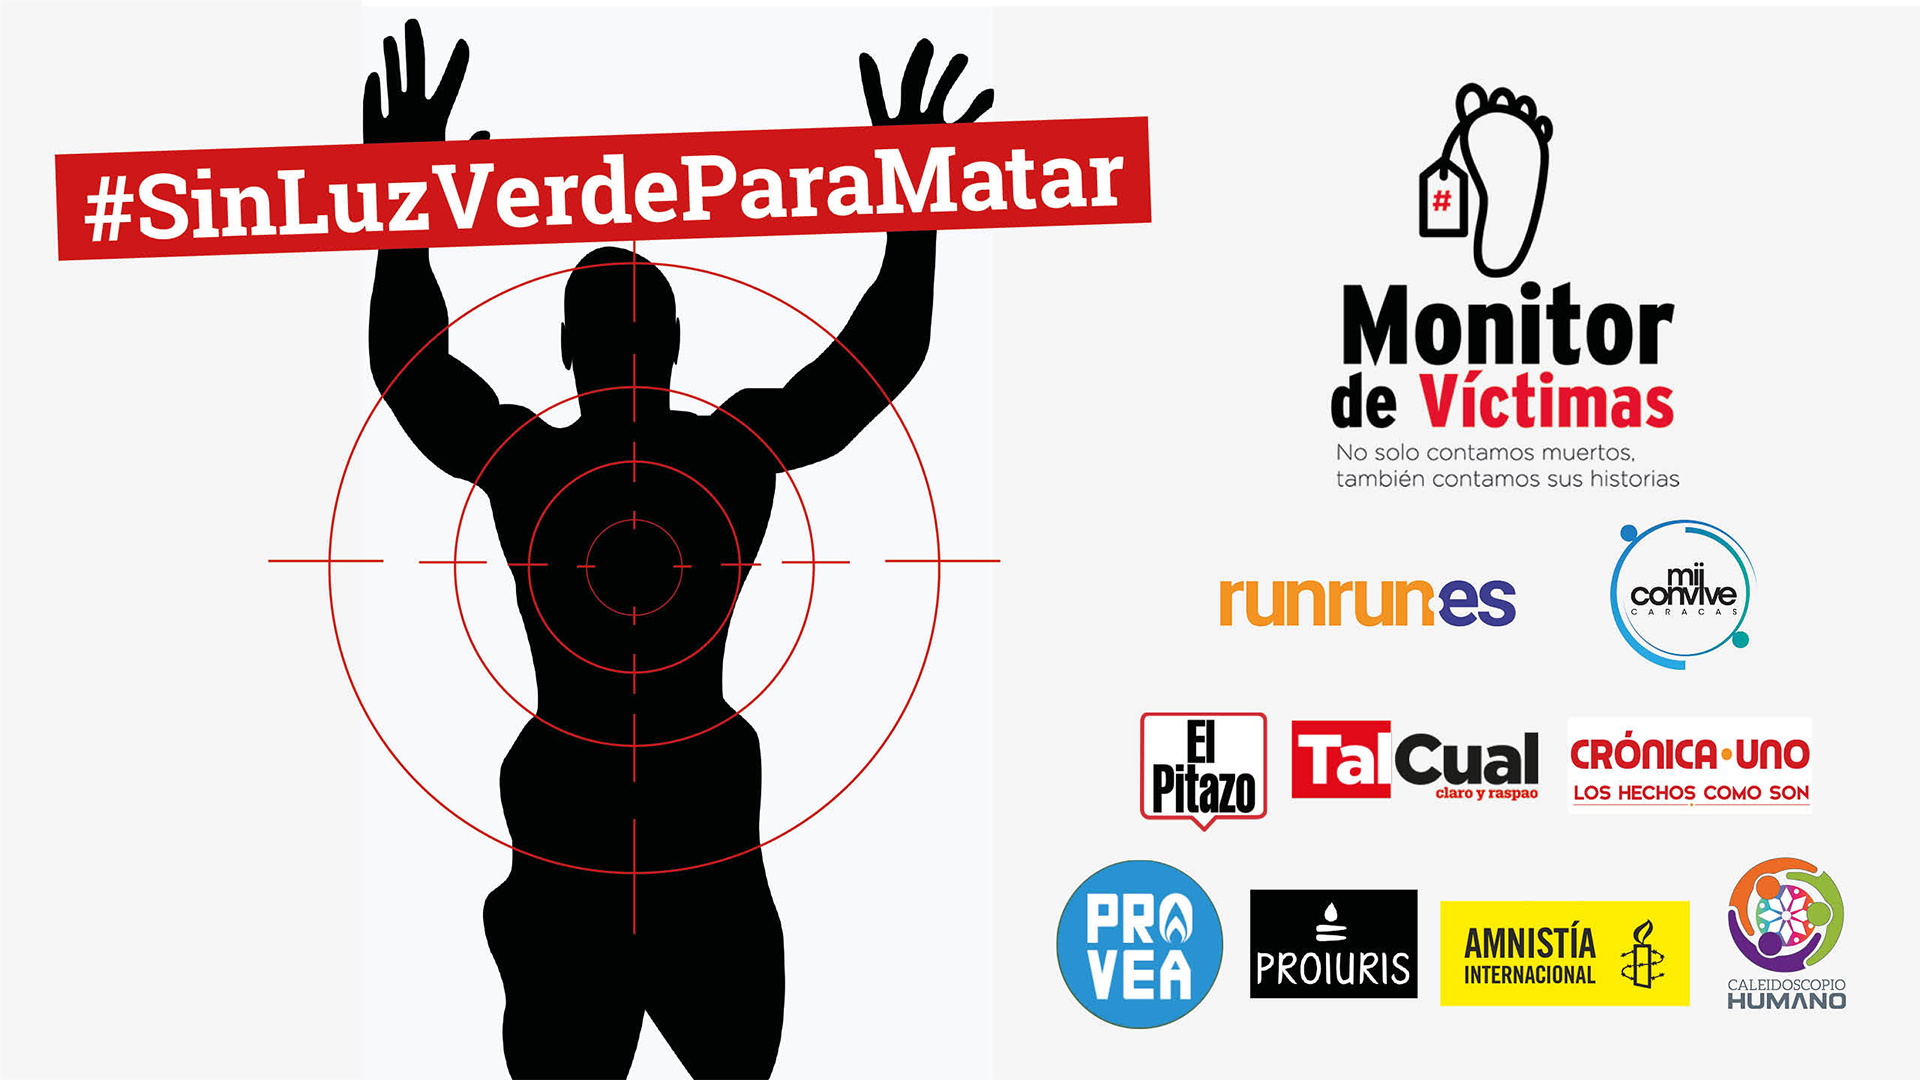 Monitor de Víctimas está en campaña... contra las ejecuciones extrajudiciales